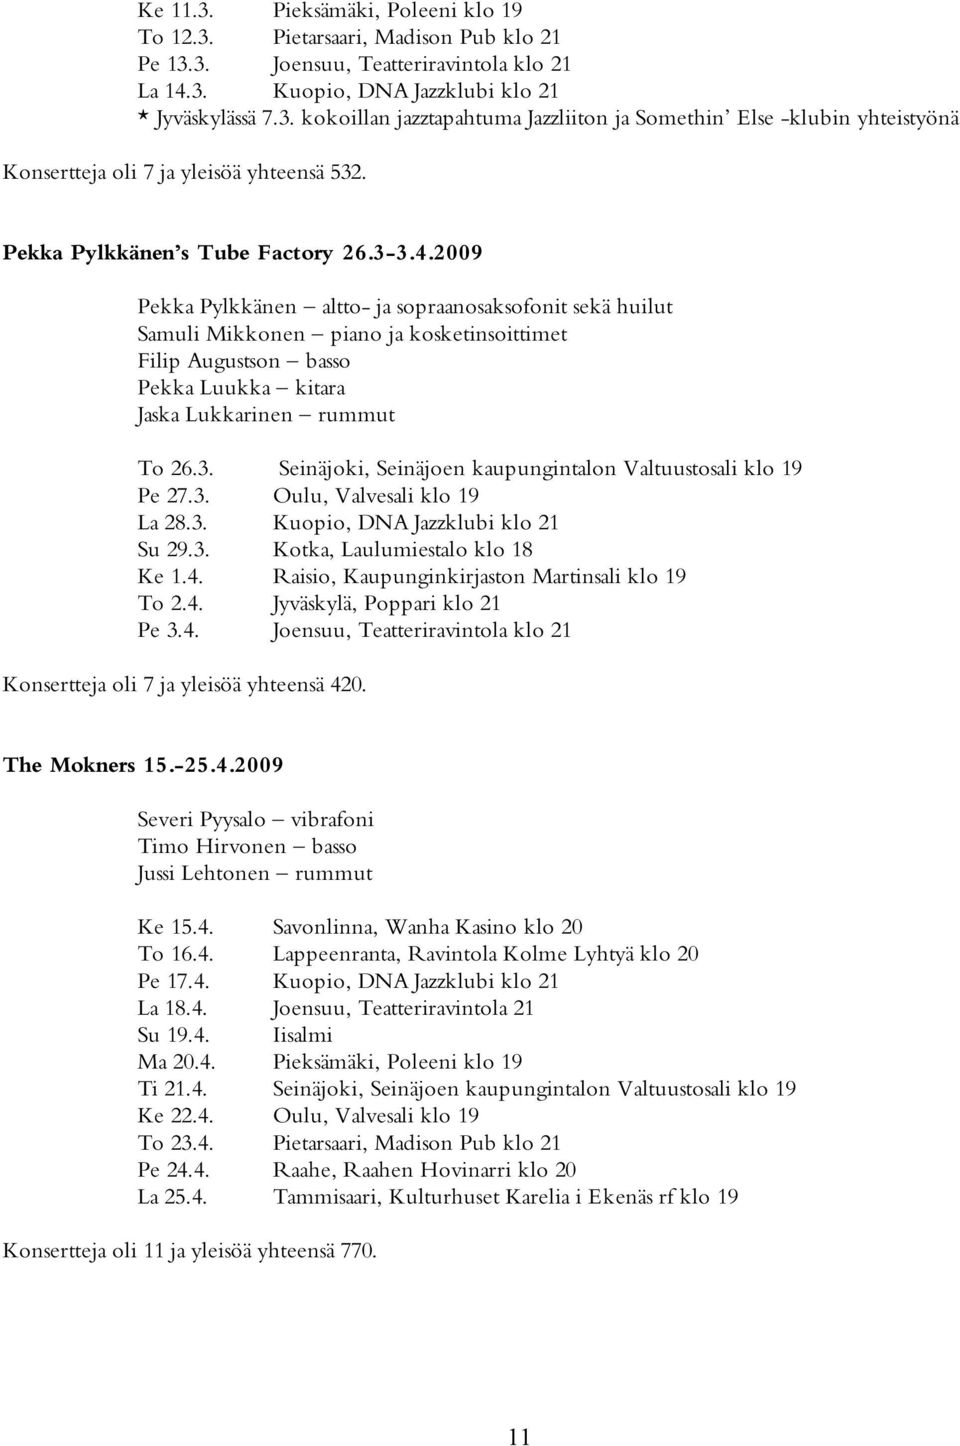 2009 Pekka Pylkkänen altto- ja sopraanosaksofonit sekä huilut Samuli Mikkonen piano ja kosketinsoittimet Filip Augustson basso Pekka Luukka kitara Jaska Lukkarinen rummut To 26.3.